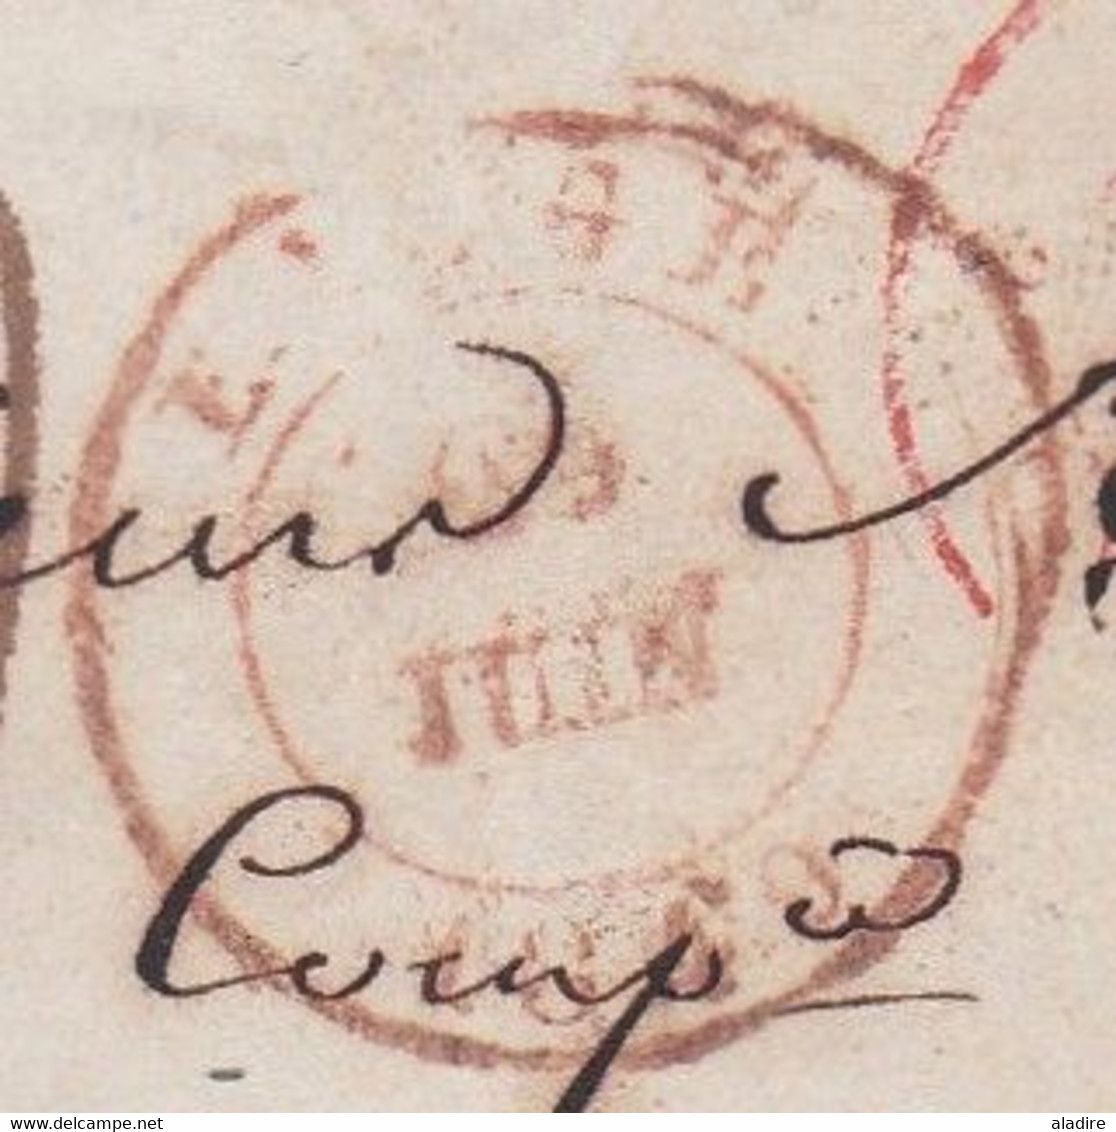 1849 - Enveloppe Pliée De Liège, Belgique Vers Paris, France - Taxe 7 Décimes - Entrée Par Valenciennes - Poste Restante - 1830-1849 (Onafhankelijk België)